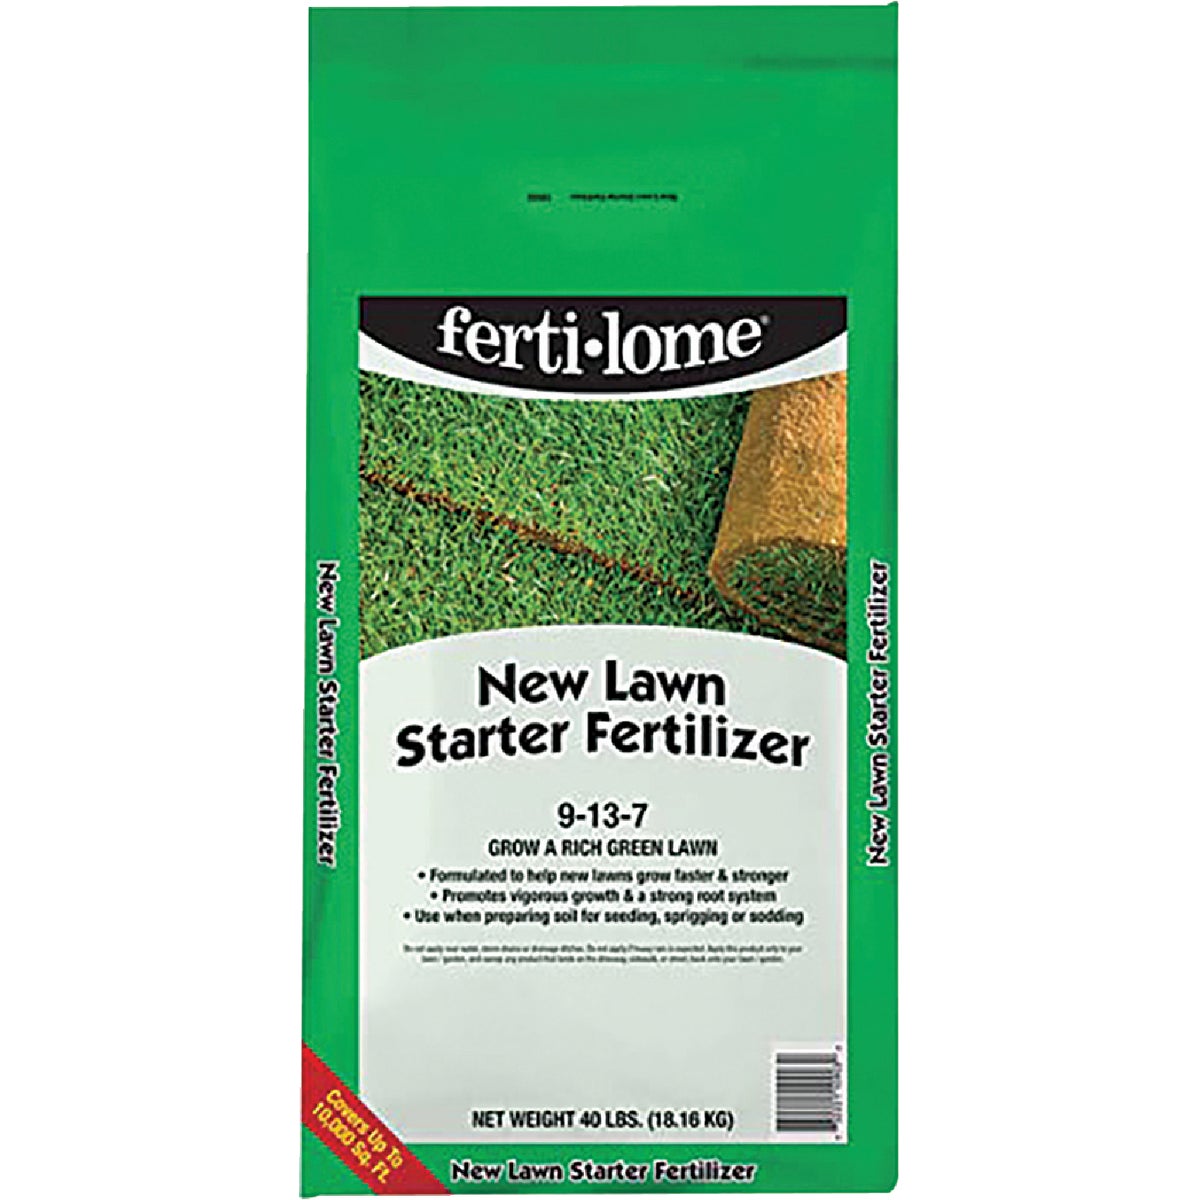 Ferti-lome 40 Lb. 10,000 Sq. Ft. 9-13-7 New Lawn Starter Fertilizer